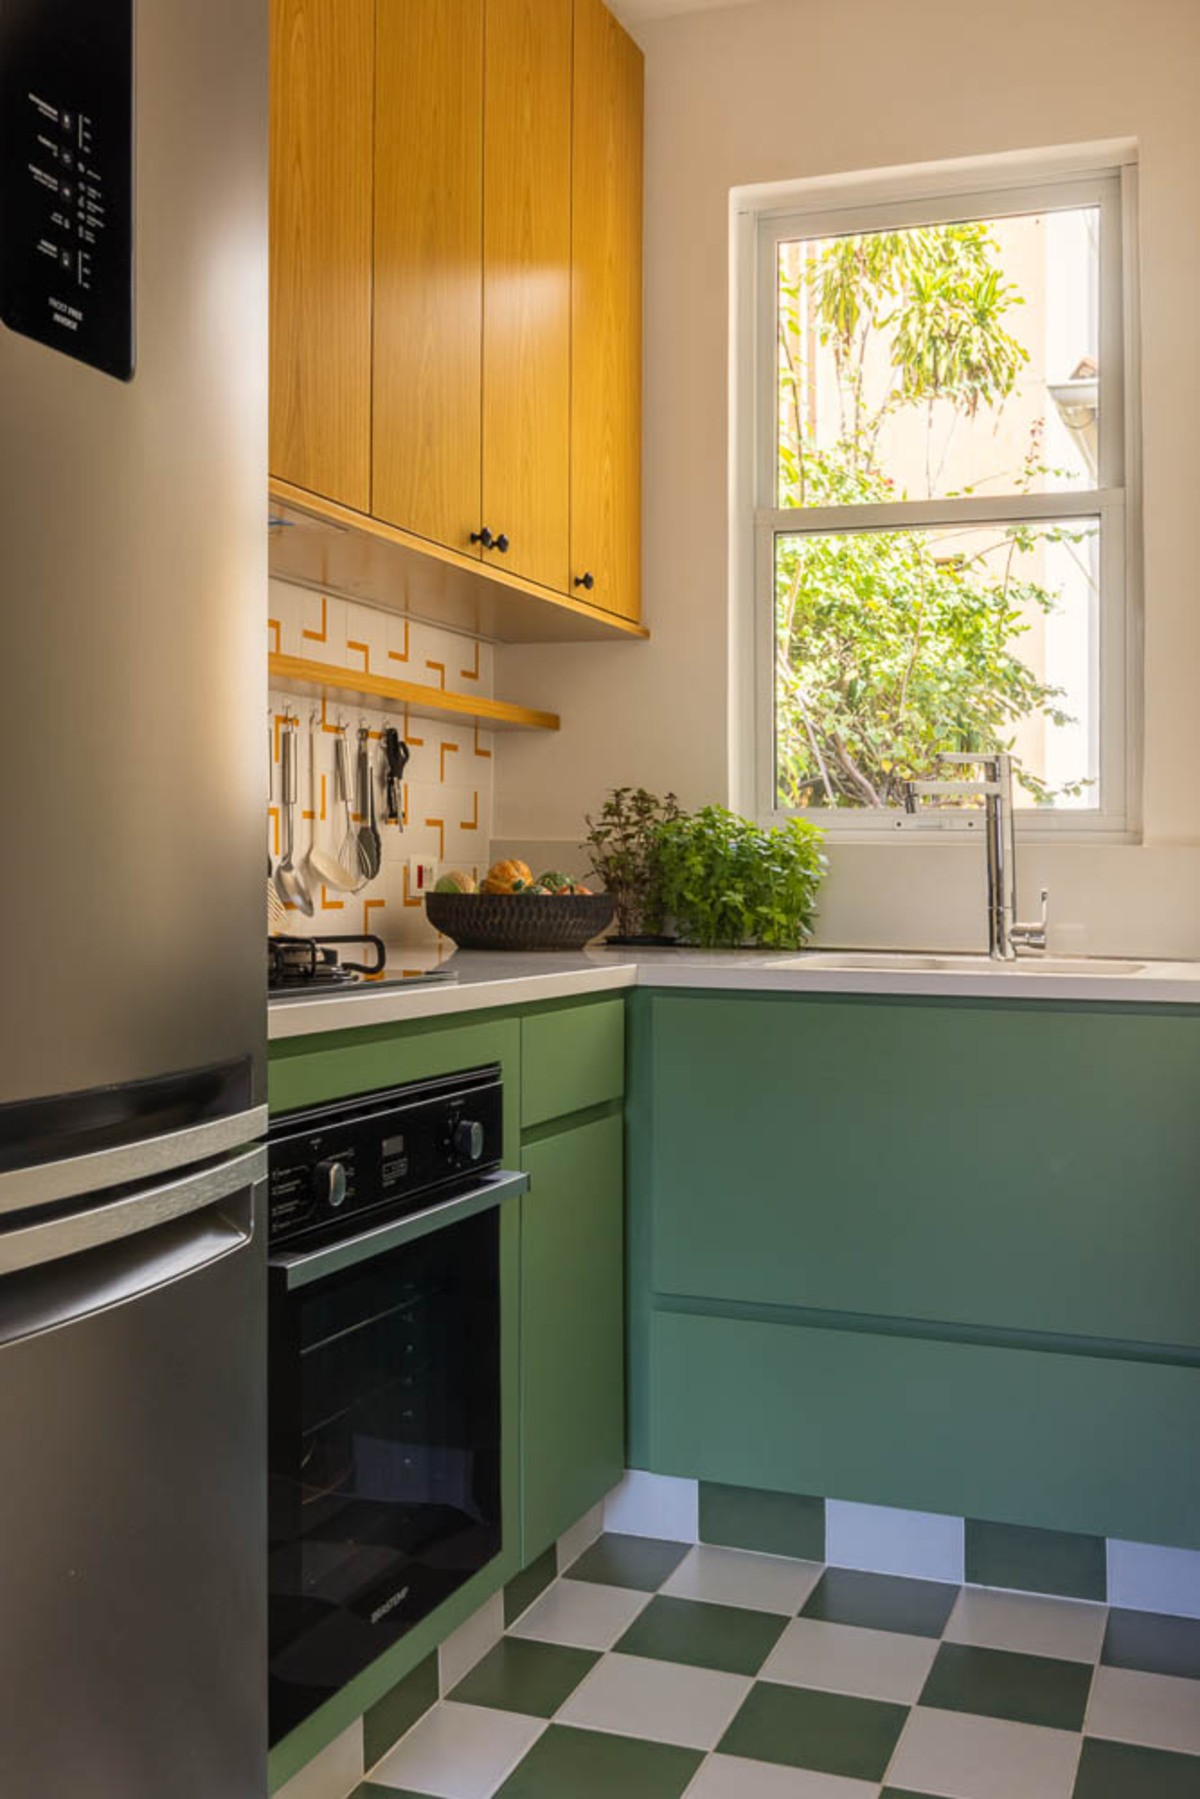 COZINHA | Os tons de verde tornam a cozinha ainda mais elegante. Pela janela é possível ver as plantas do lado de fora e integram a natureza com o espaço (Foto: André Nazareth / Divulgação)